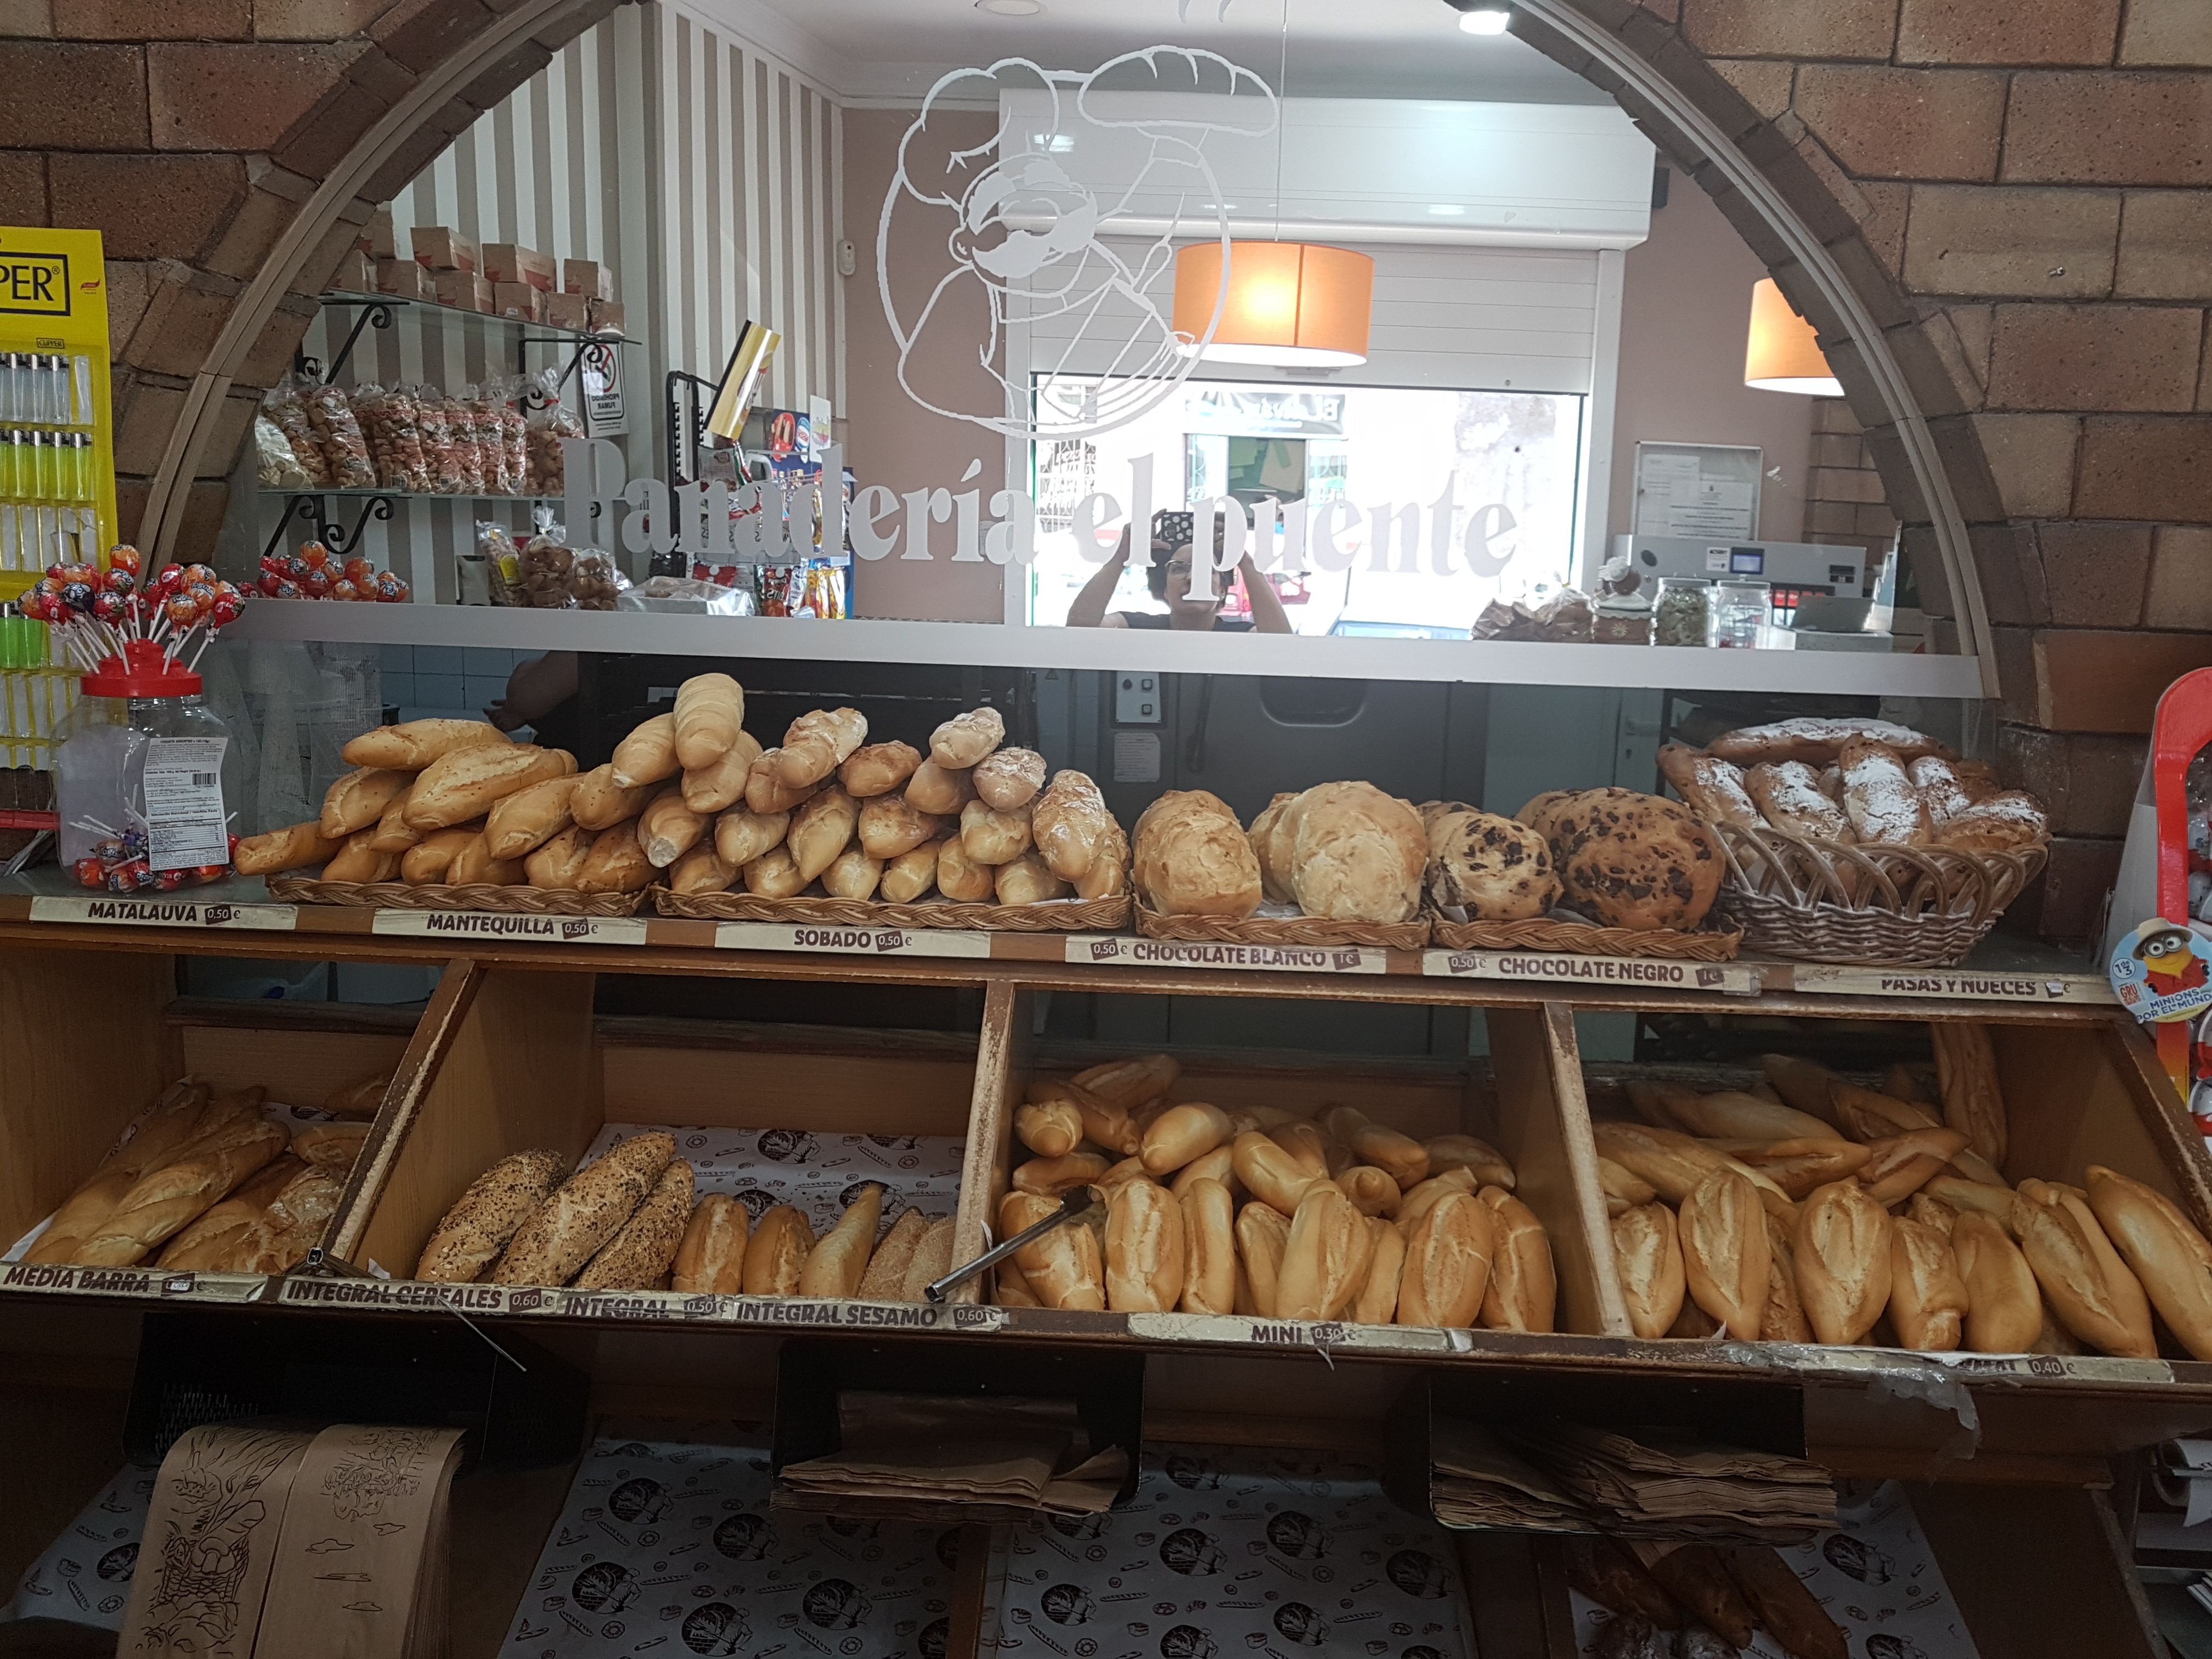 Gran variedad de panes artesanales